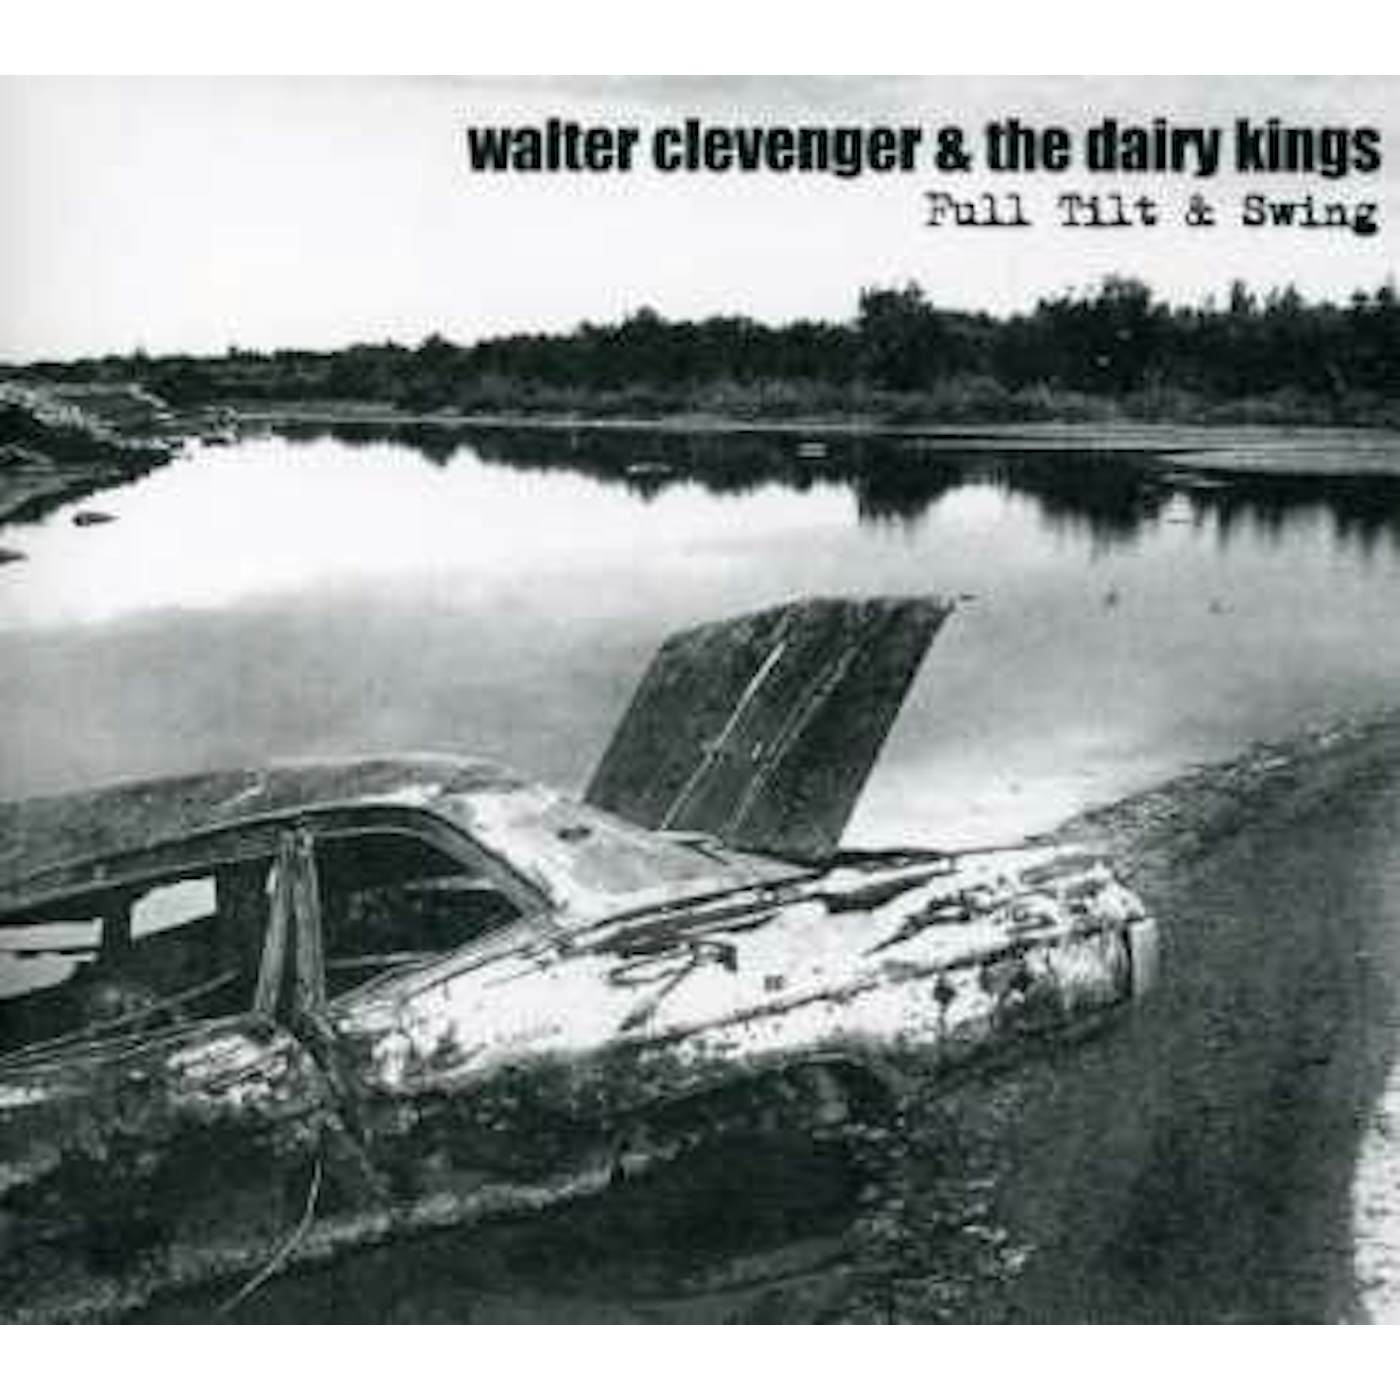 Walter Clevenger FULL TILT & SWING CD